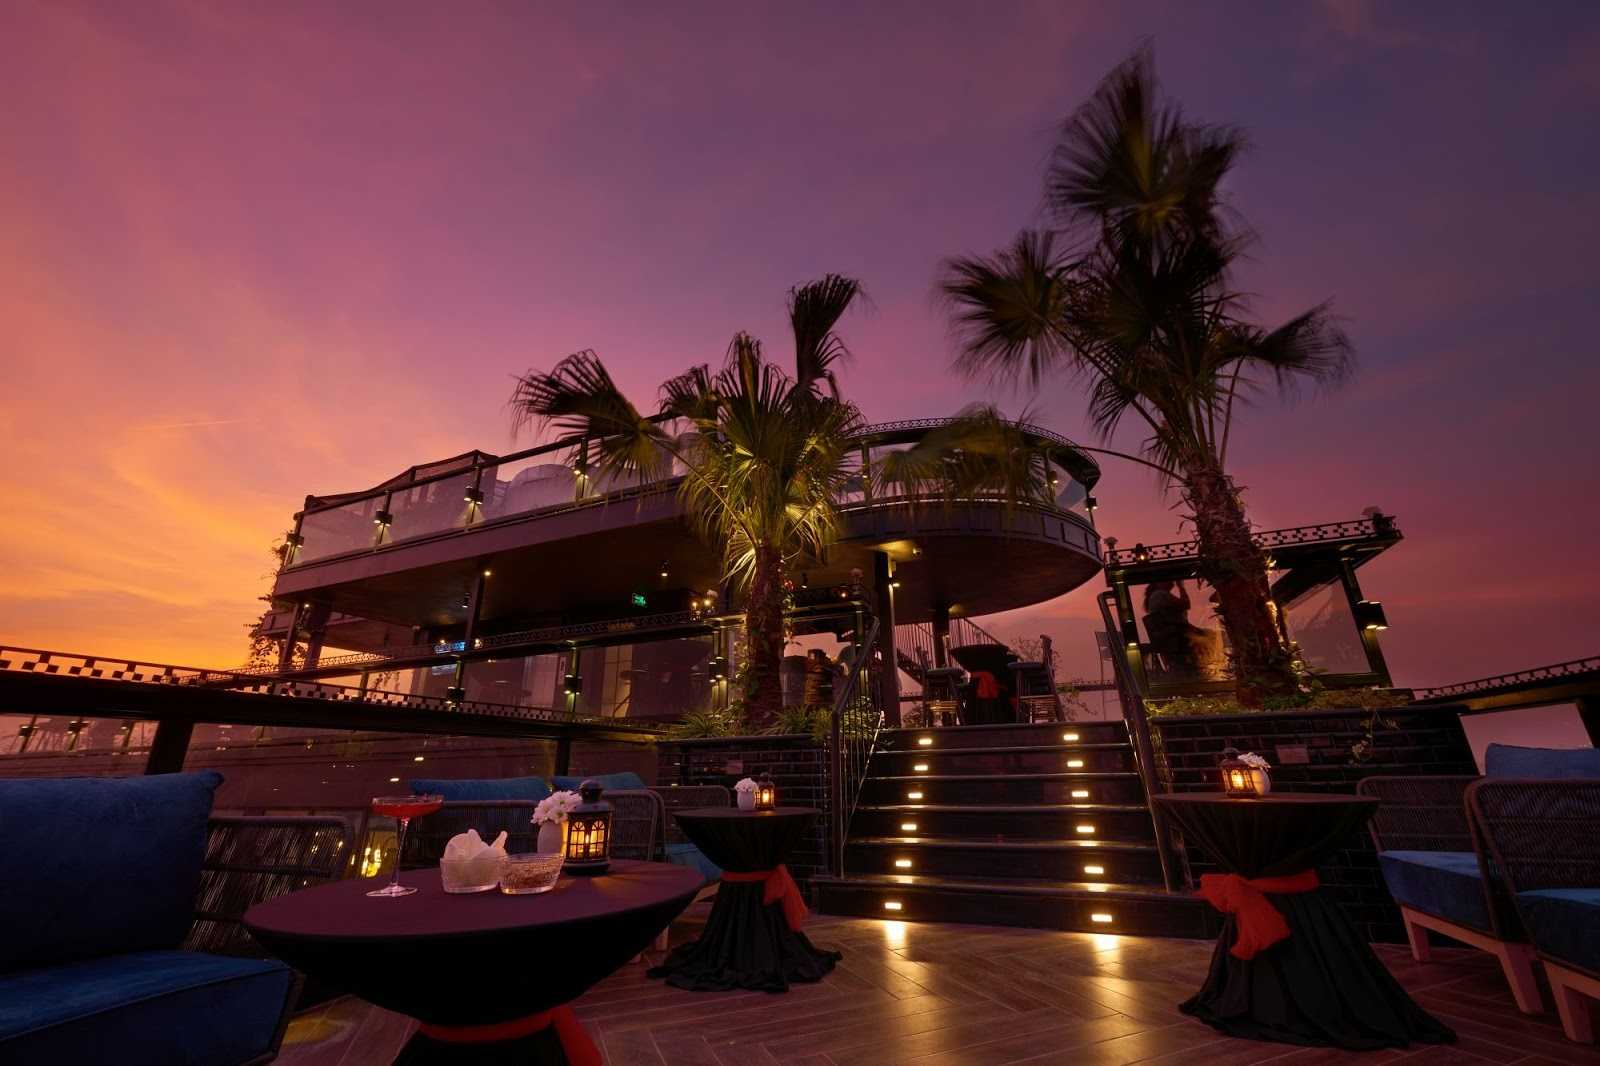 hanoi rooftop bars - lighthouse bar twilight